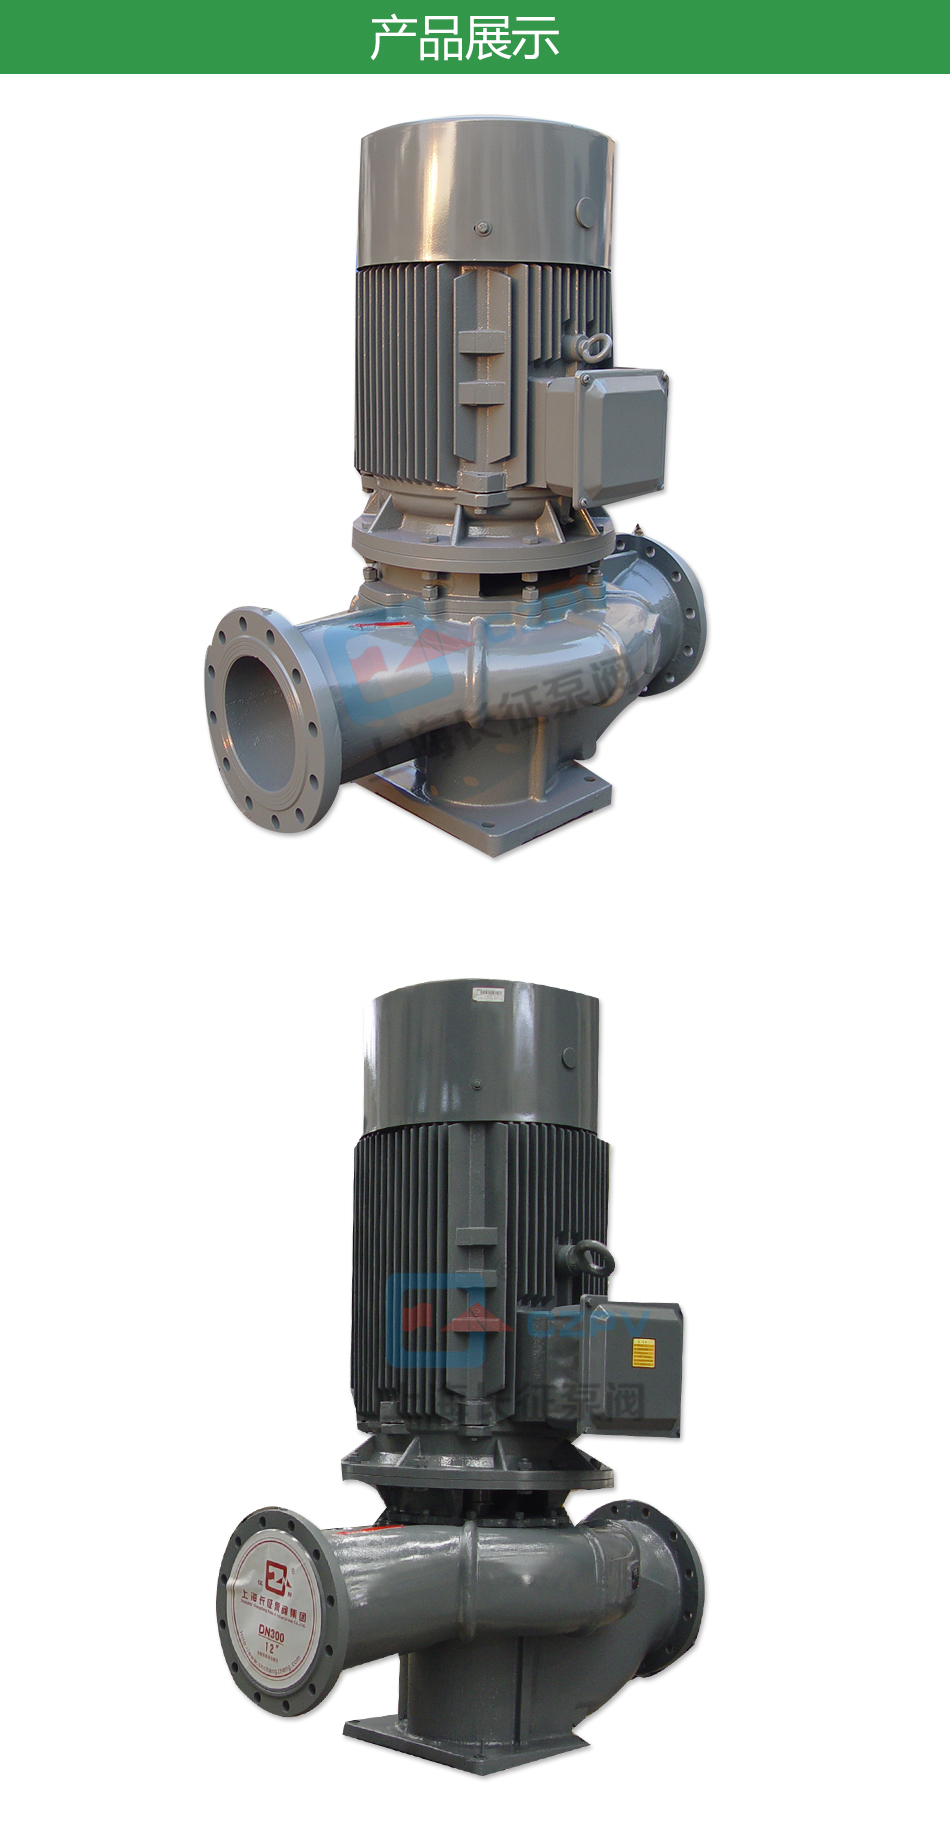 LTP立式高效节能循环水泵产品展示图片